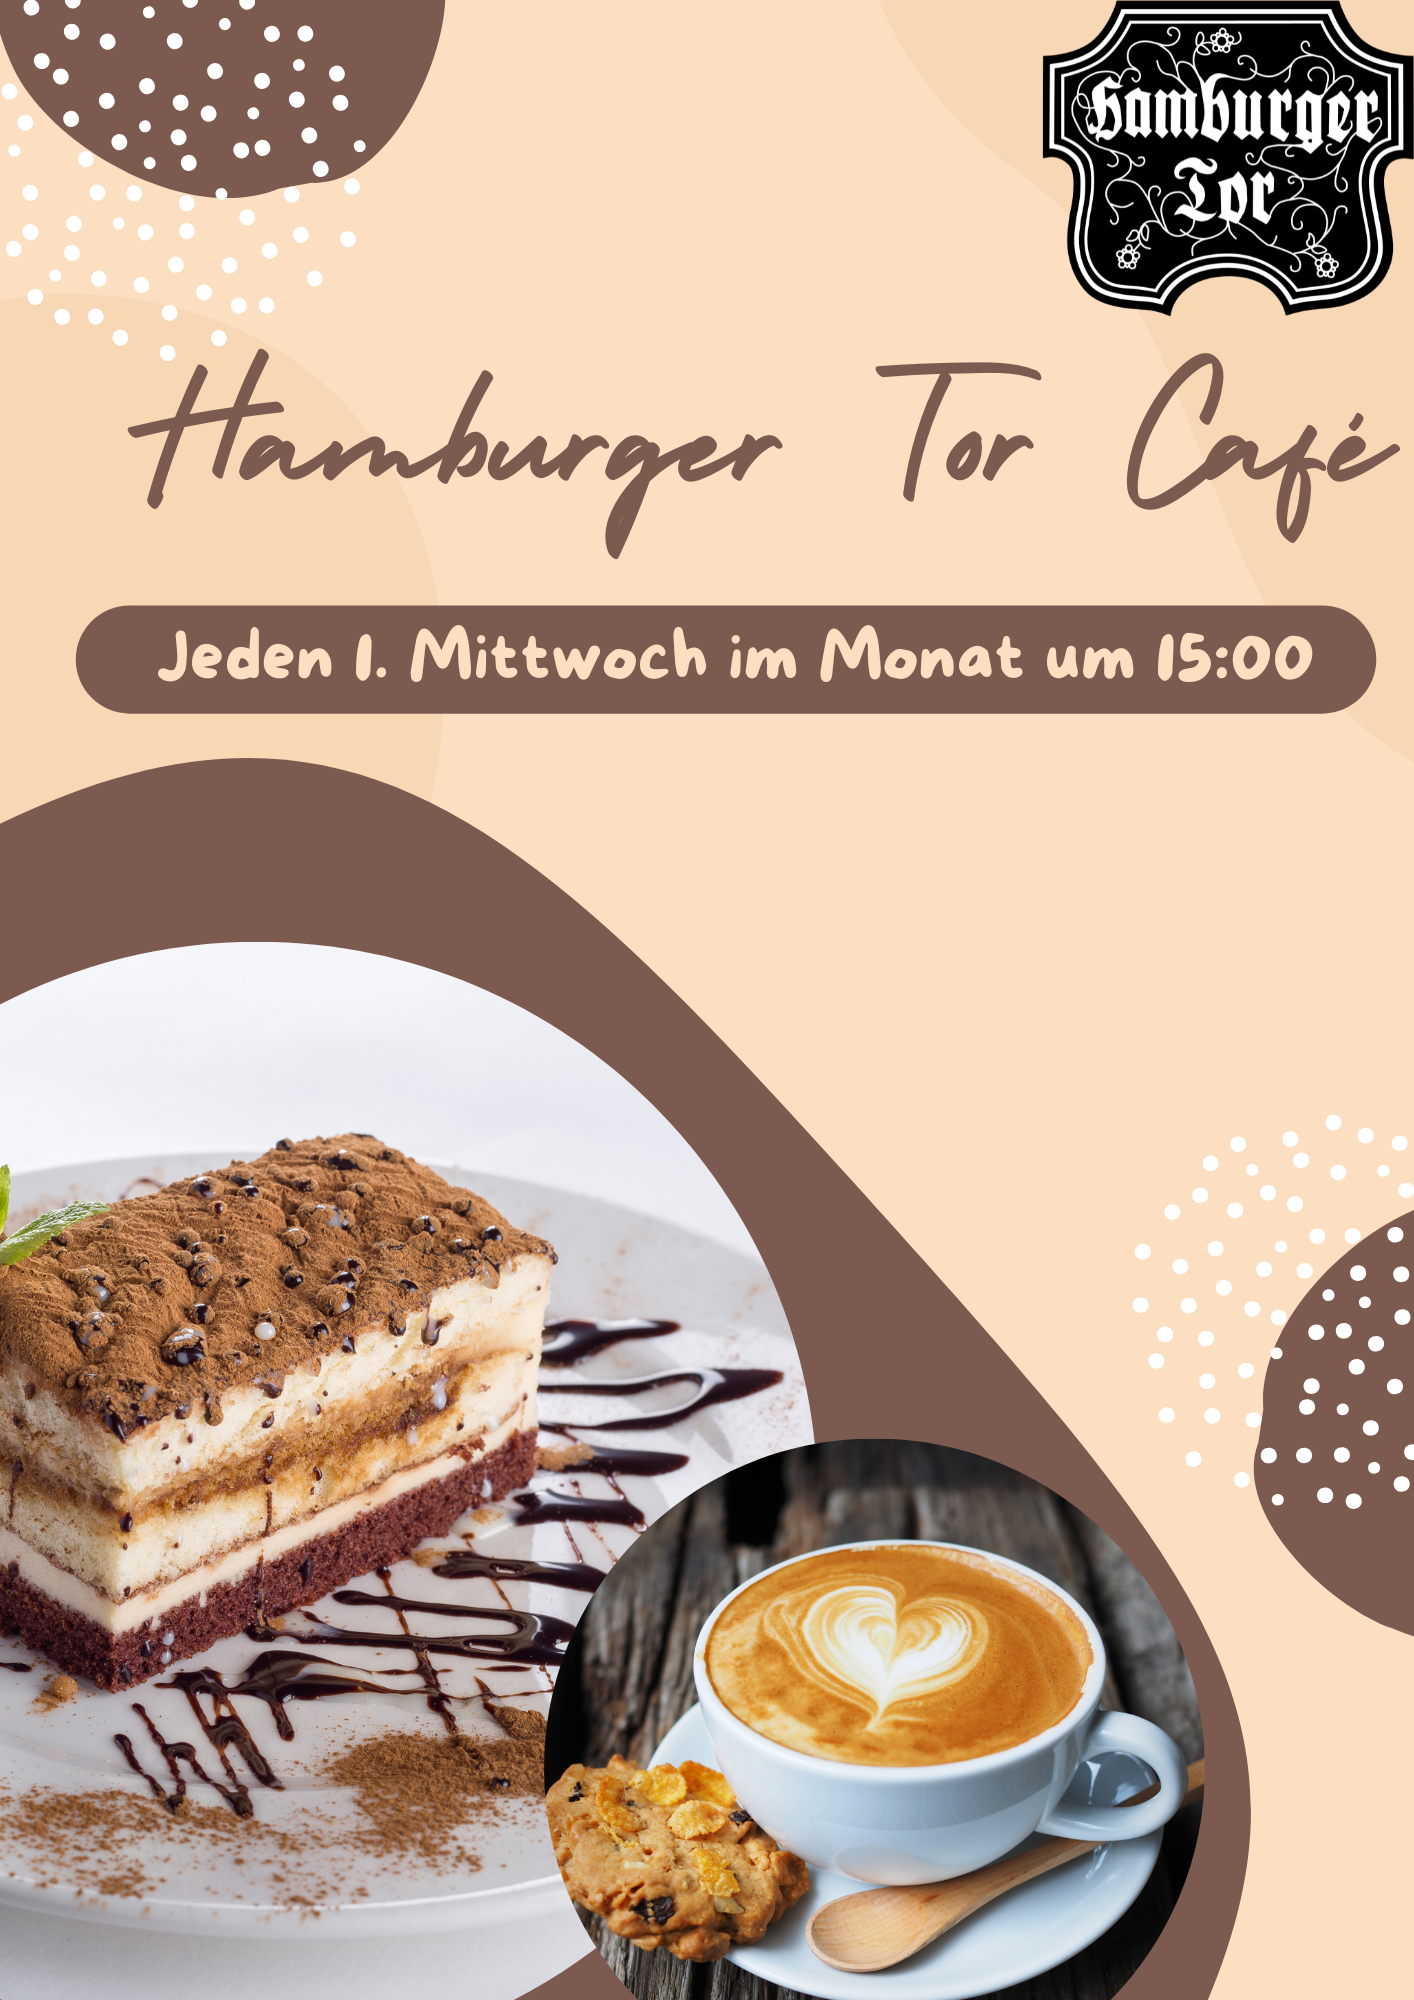 Hamburger Tor Cafè